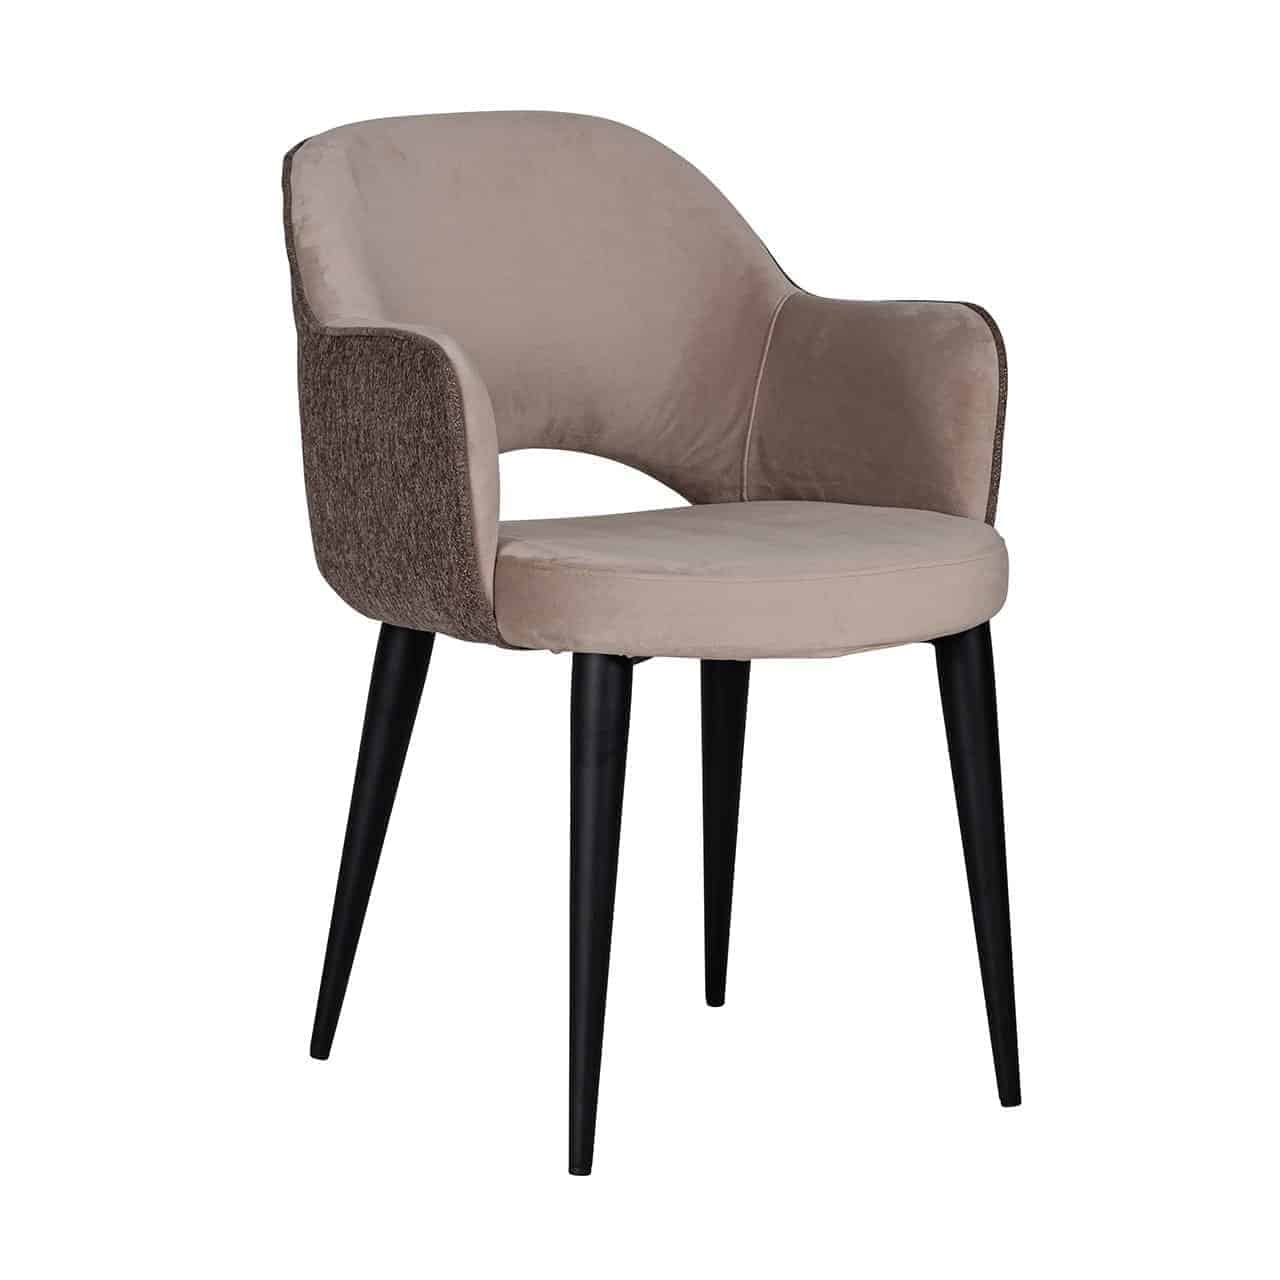 Chaise design avec accoudoirs pieds métal noir assise tissu taupe, gris